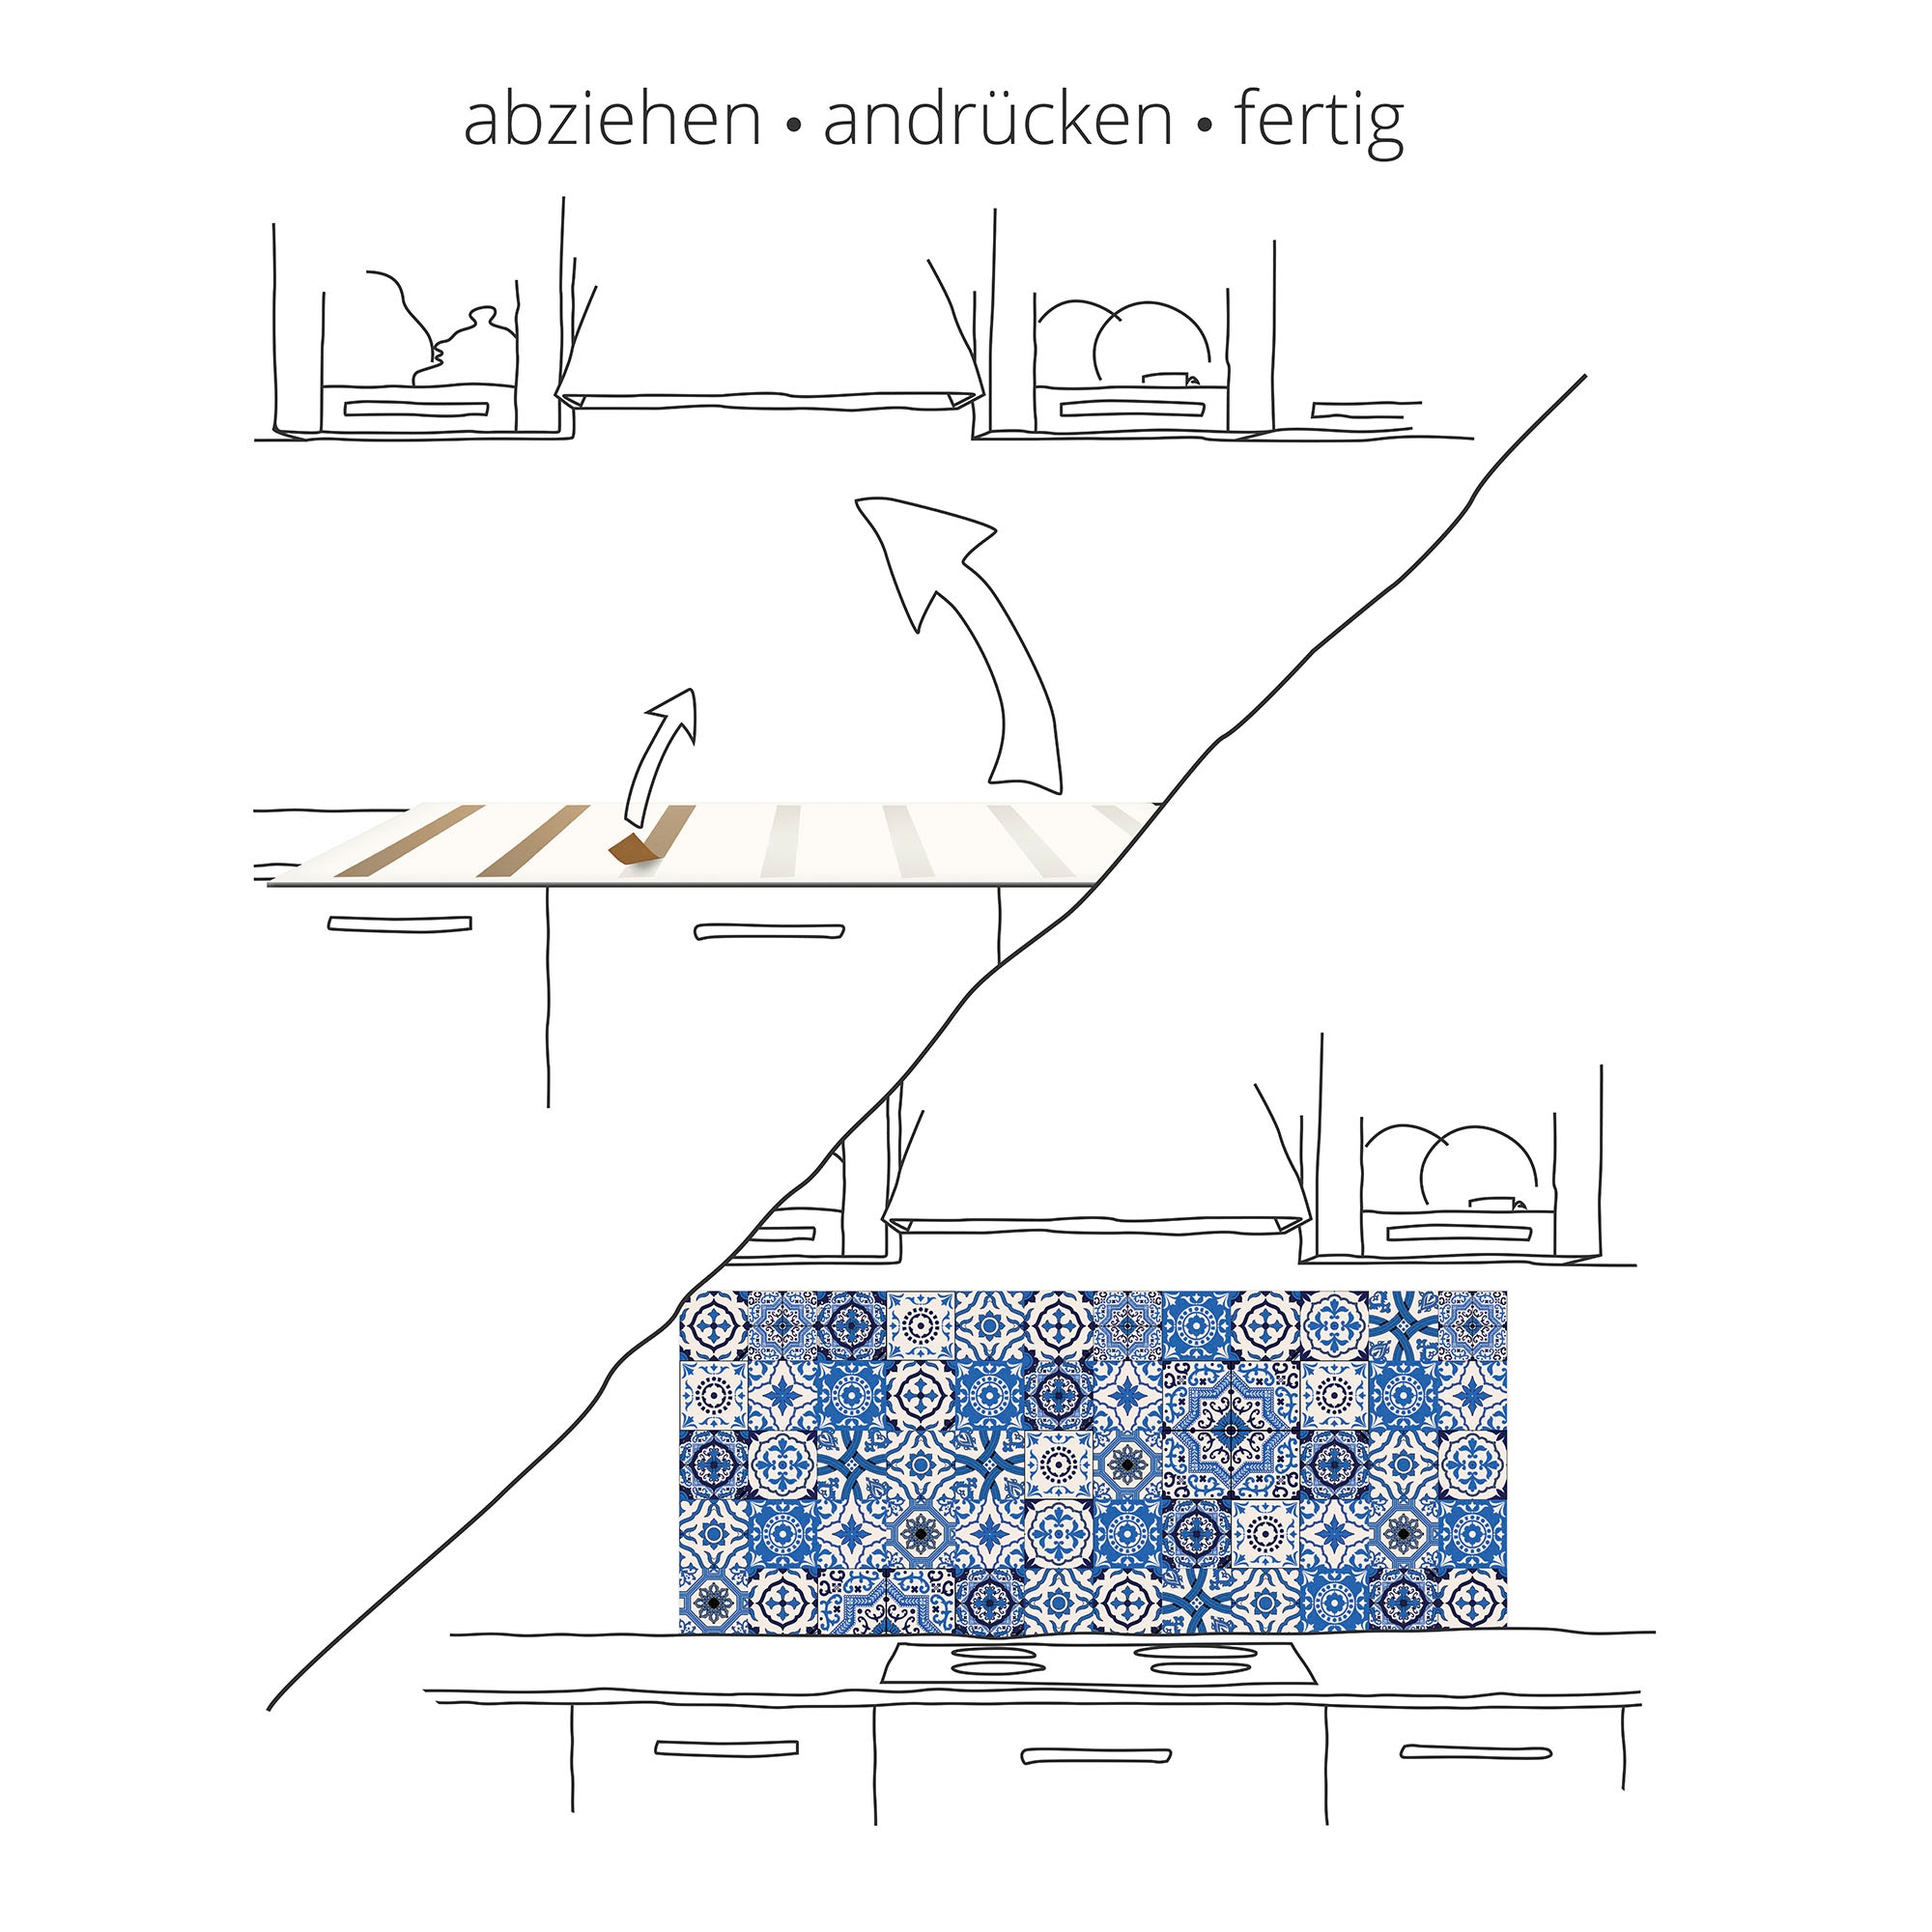 Artland Küchenrückwand »Holzstruktur«, (1 tlg.), Alu Spritzschutz mit Klebeband, einfache Montage